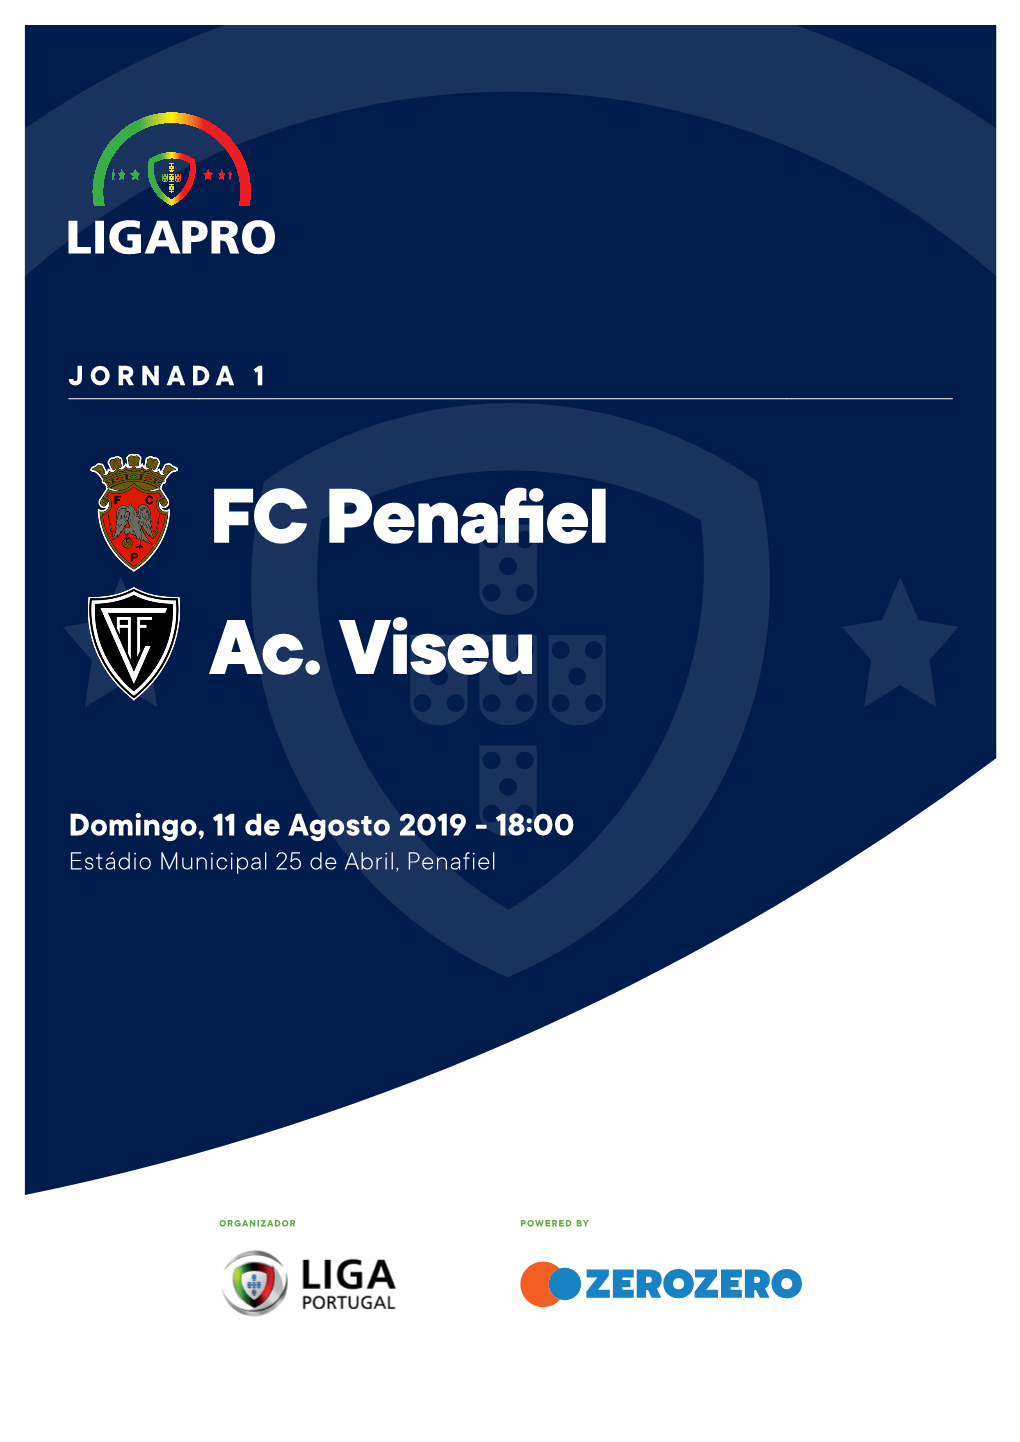 FC Penafiel Ac. Viseu